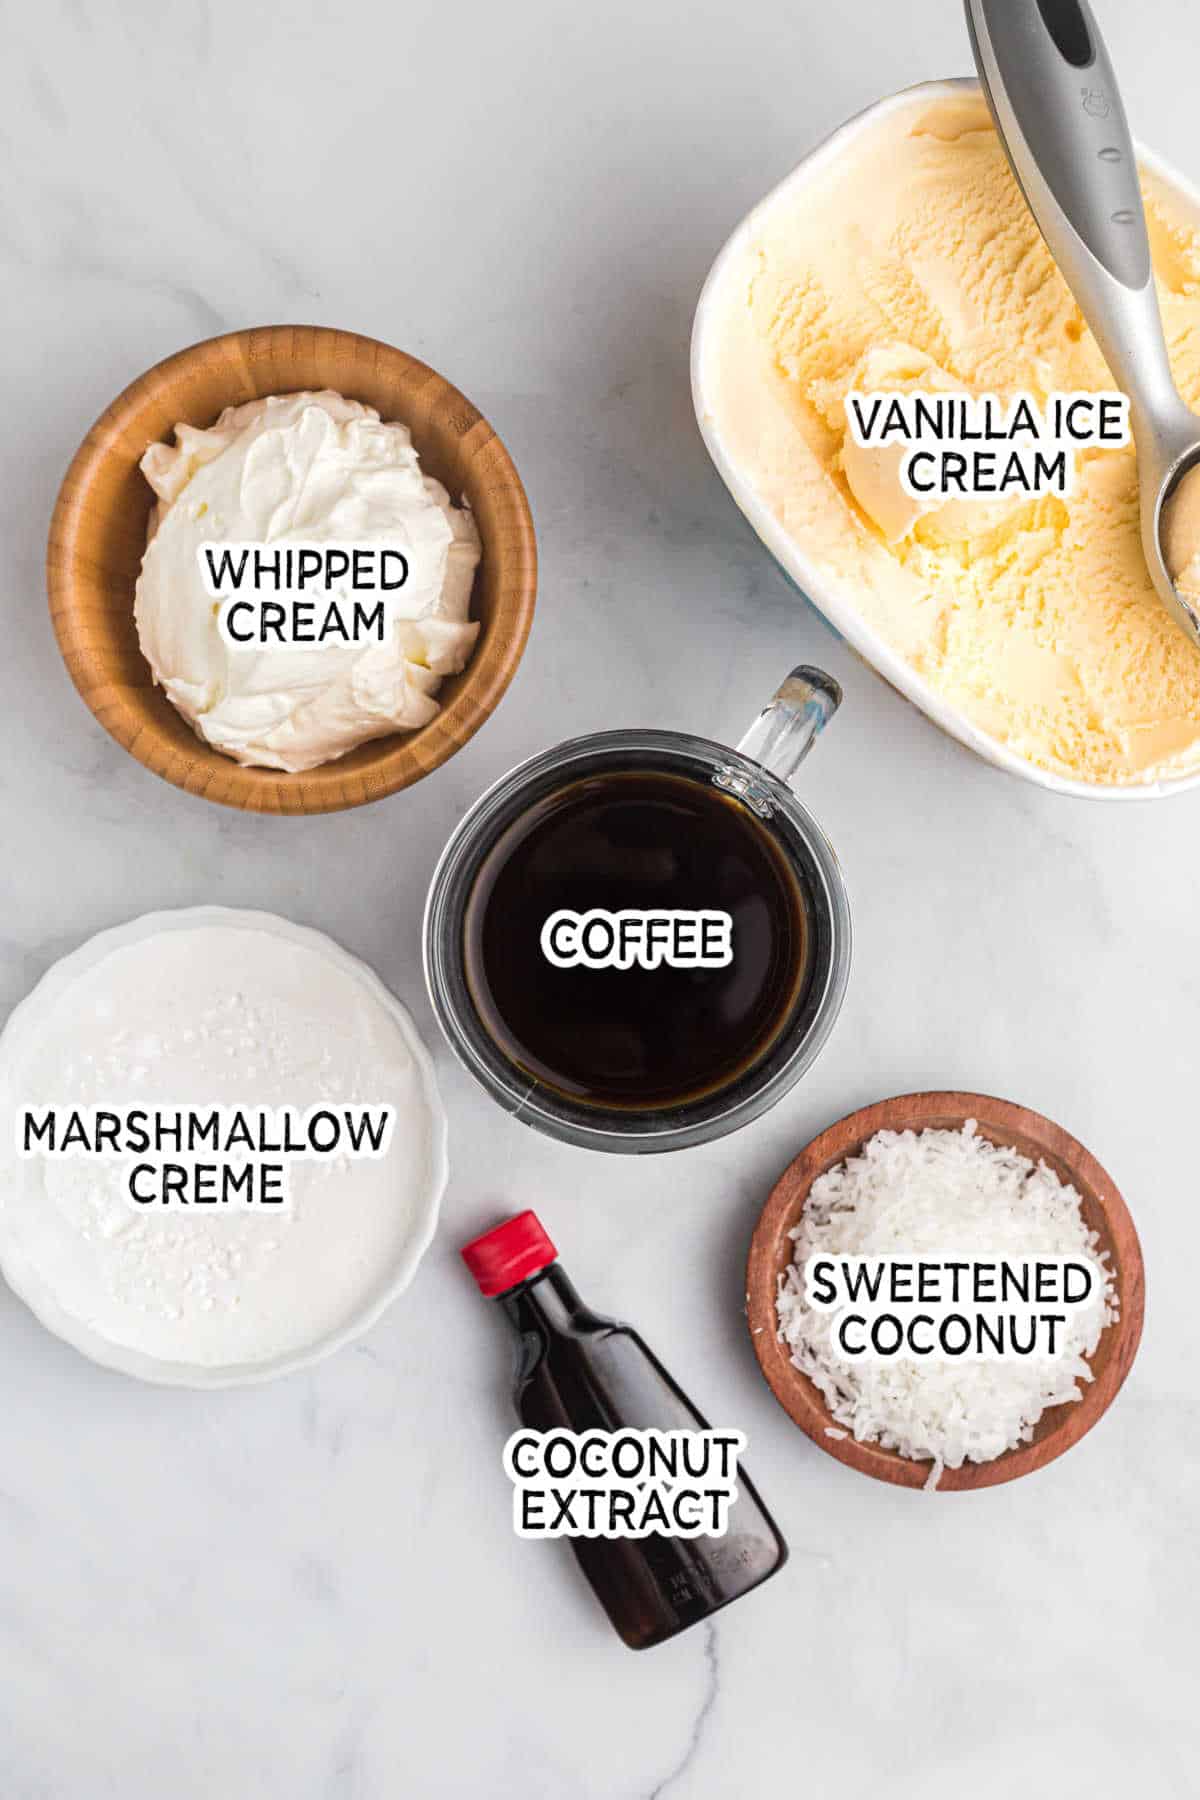 Ingredients to make a coconut coffee milkshake.